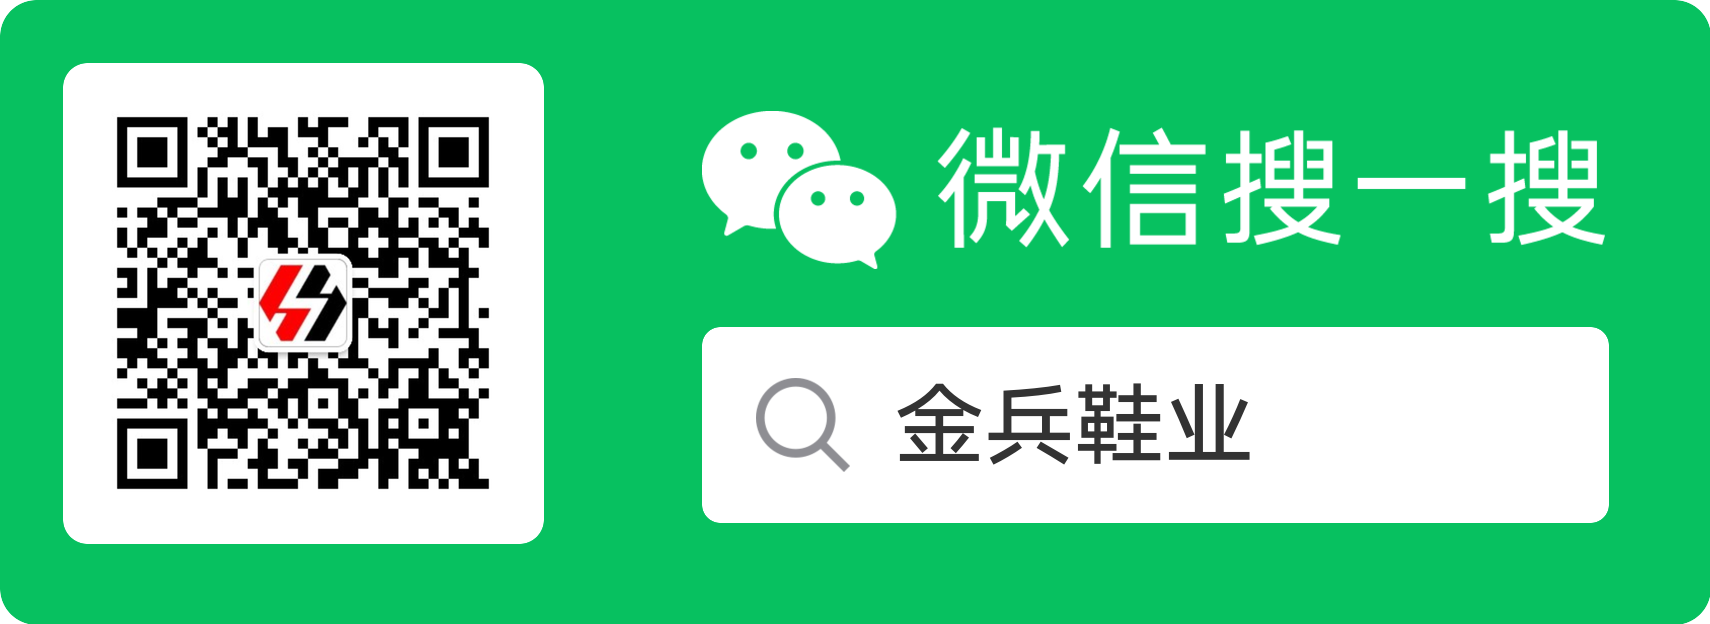 Scannen Sie Code oder suchen Sie offizielles Konto auf WeChat：Jinbing Schuhindustrie.png